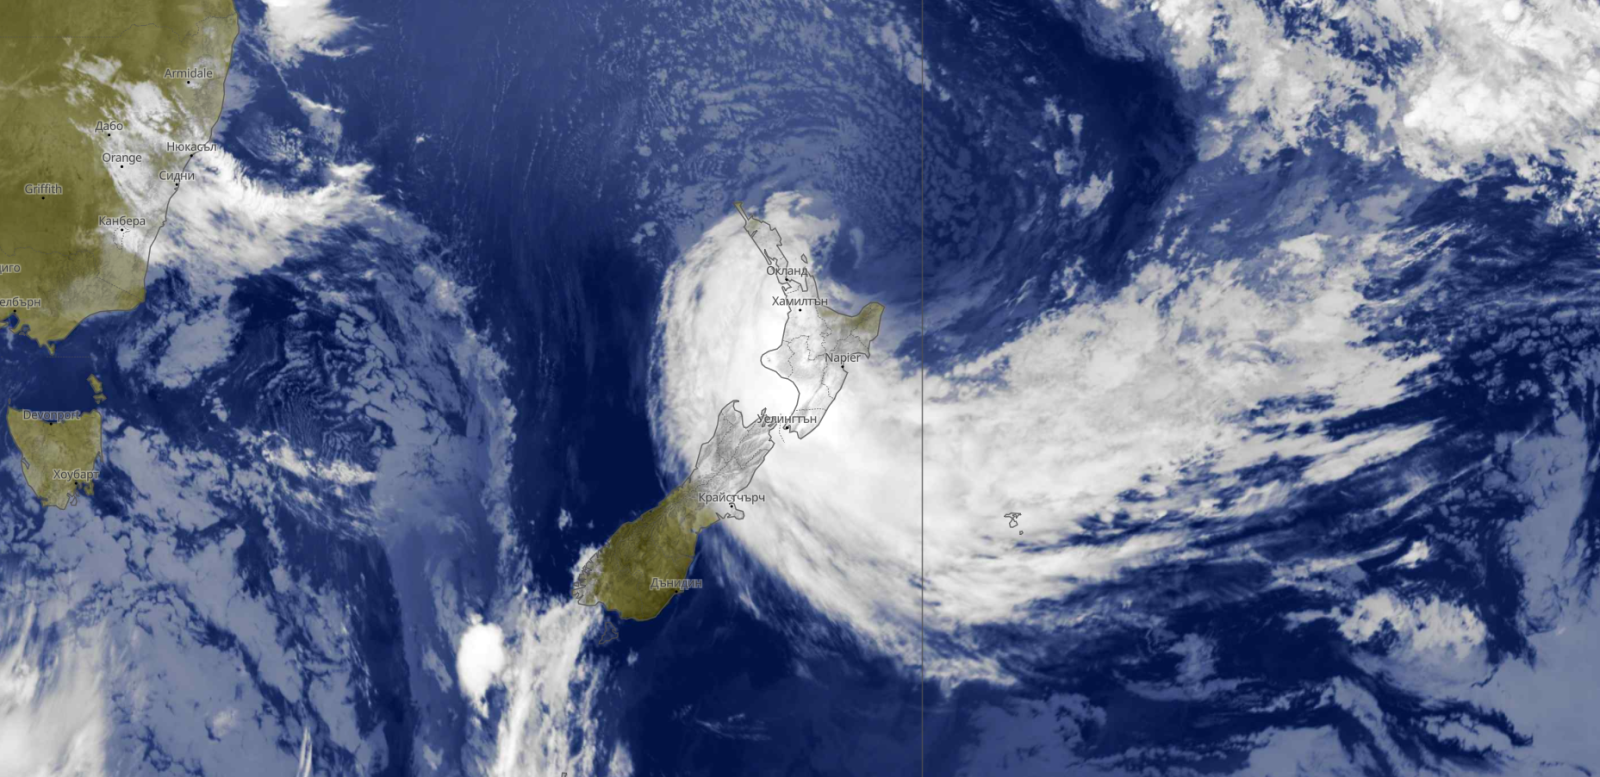 Правителството на Нова Зеландия обяви извънредно положение заради бурята Габриел,